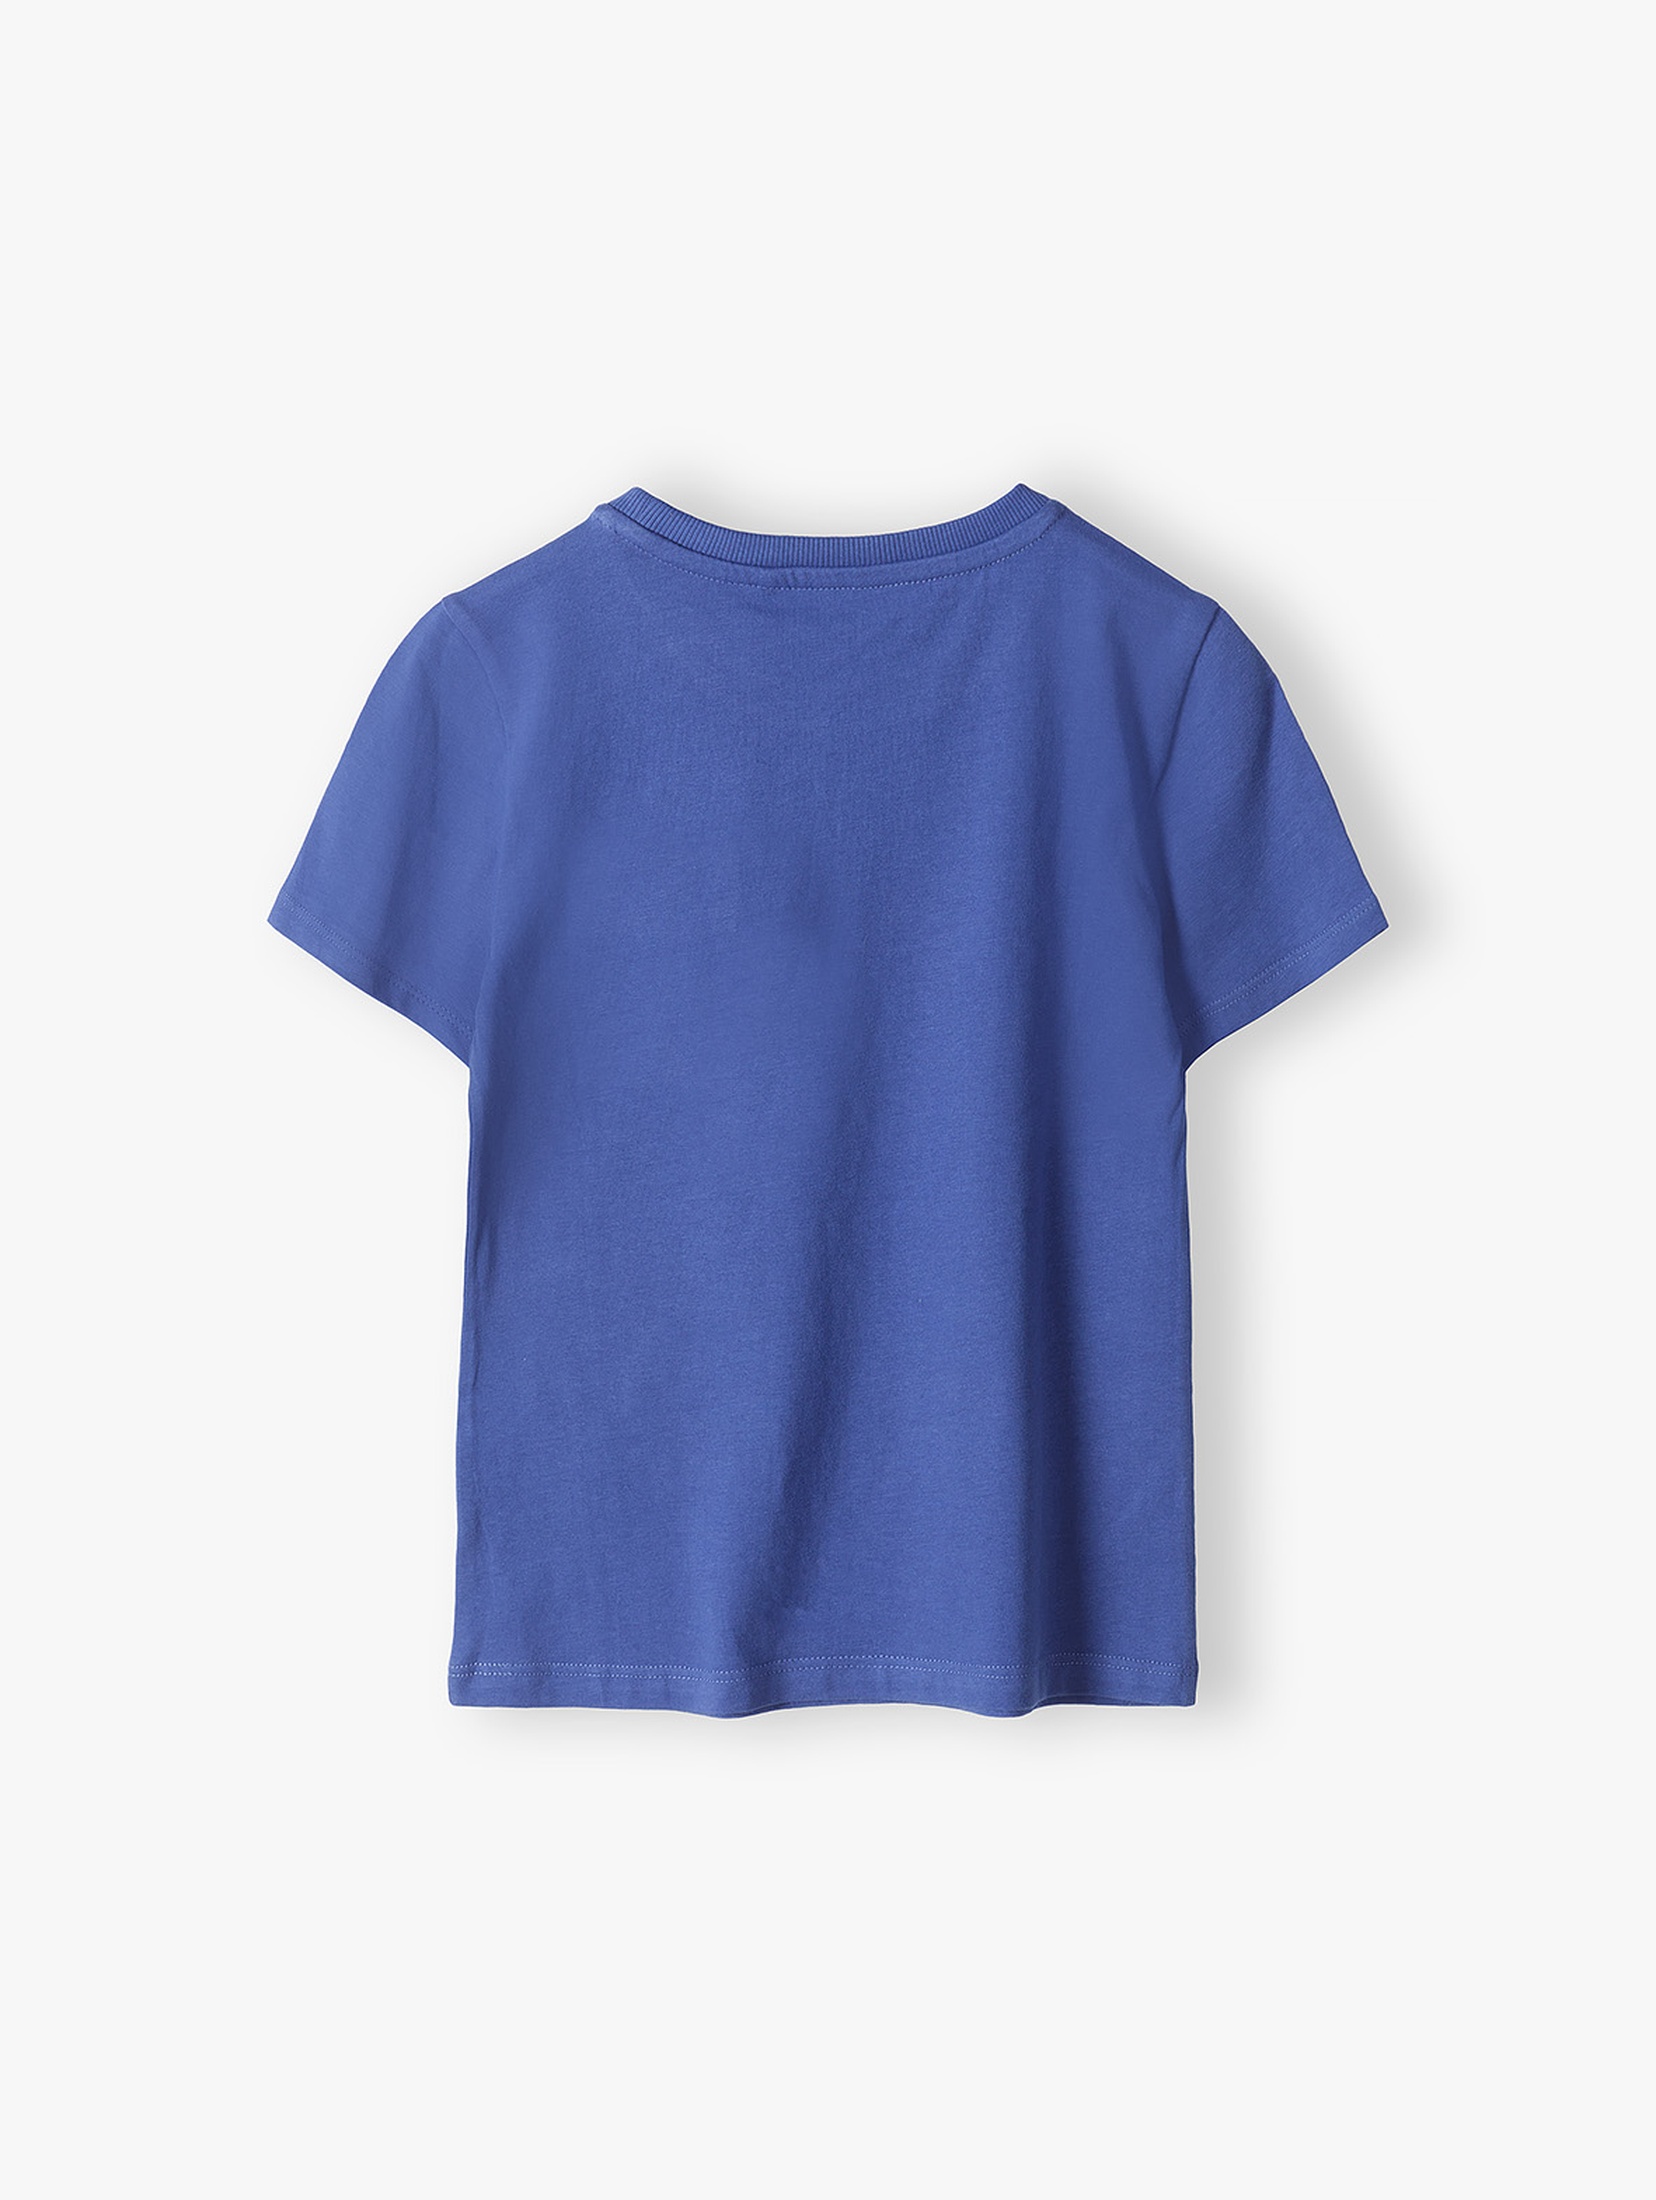 Niebieski t-shirt bawełniany chłopięcy z małą kieszonką